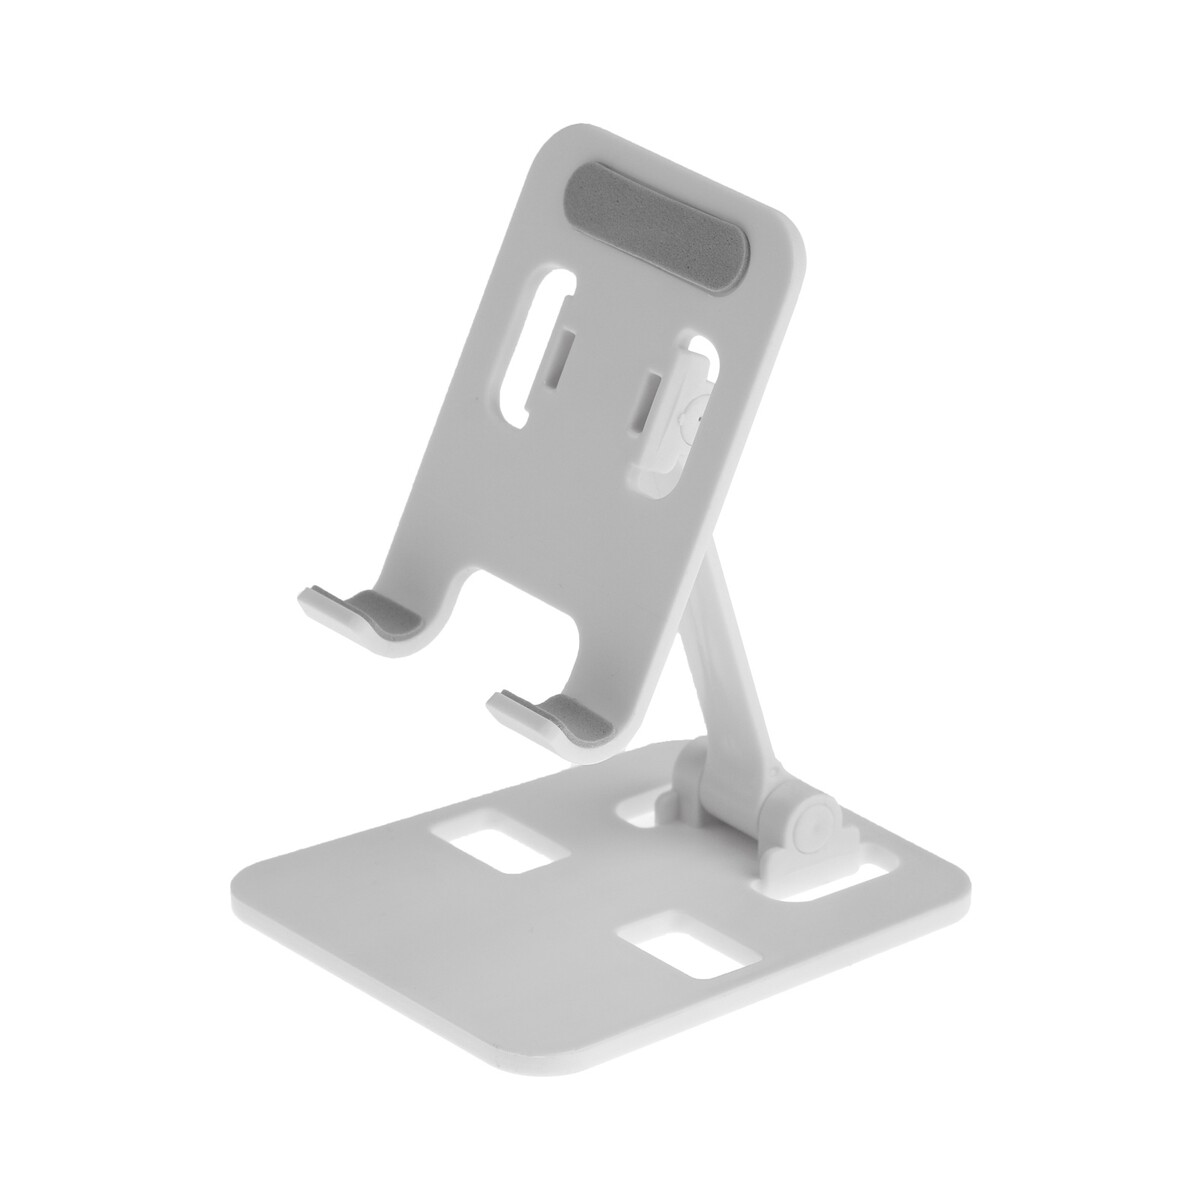 Подставка для телефона luazon, складная, регулируемая, резиновые вставки, белая подставка для планшета регулируемая складная поворот на 360° металл серебристая